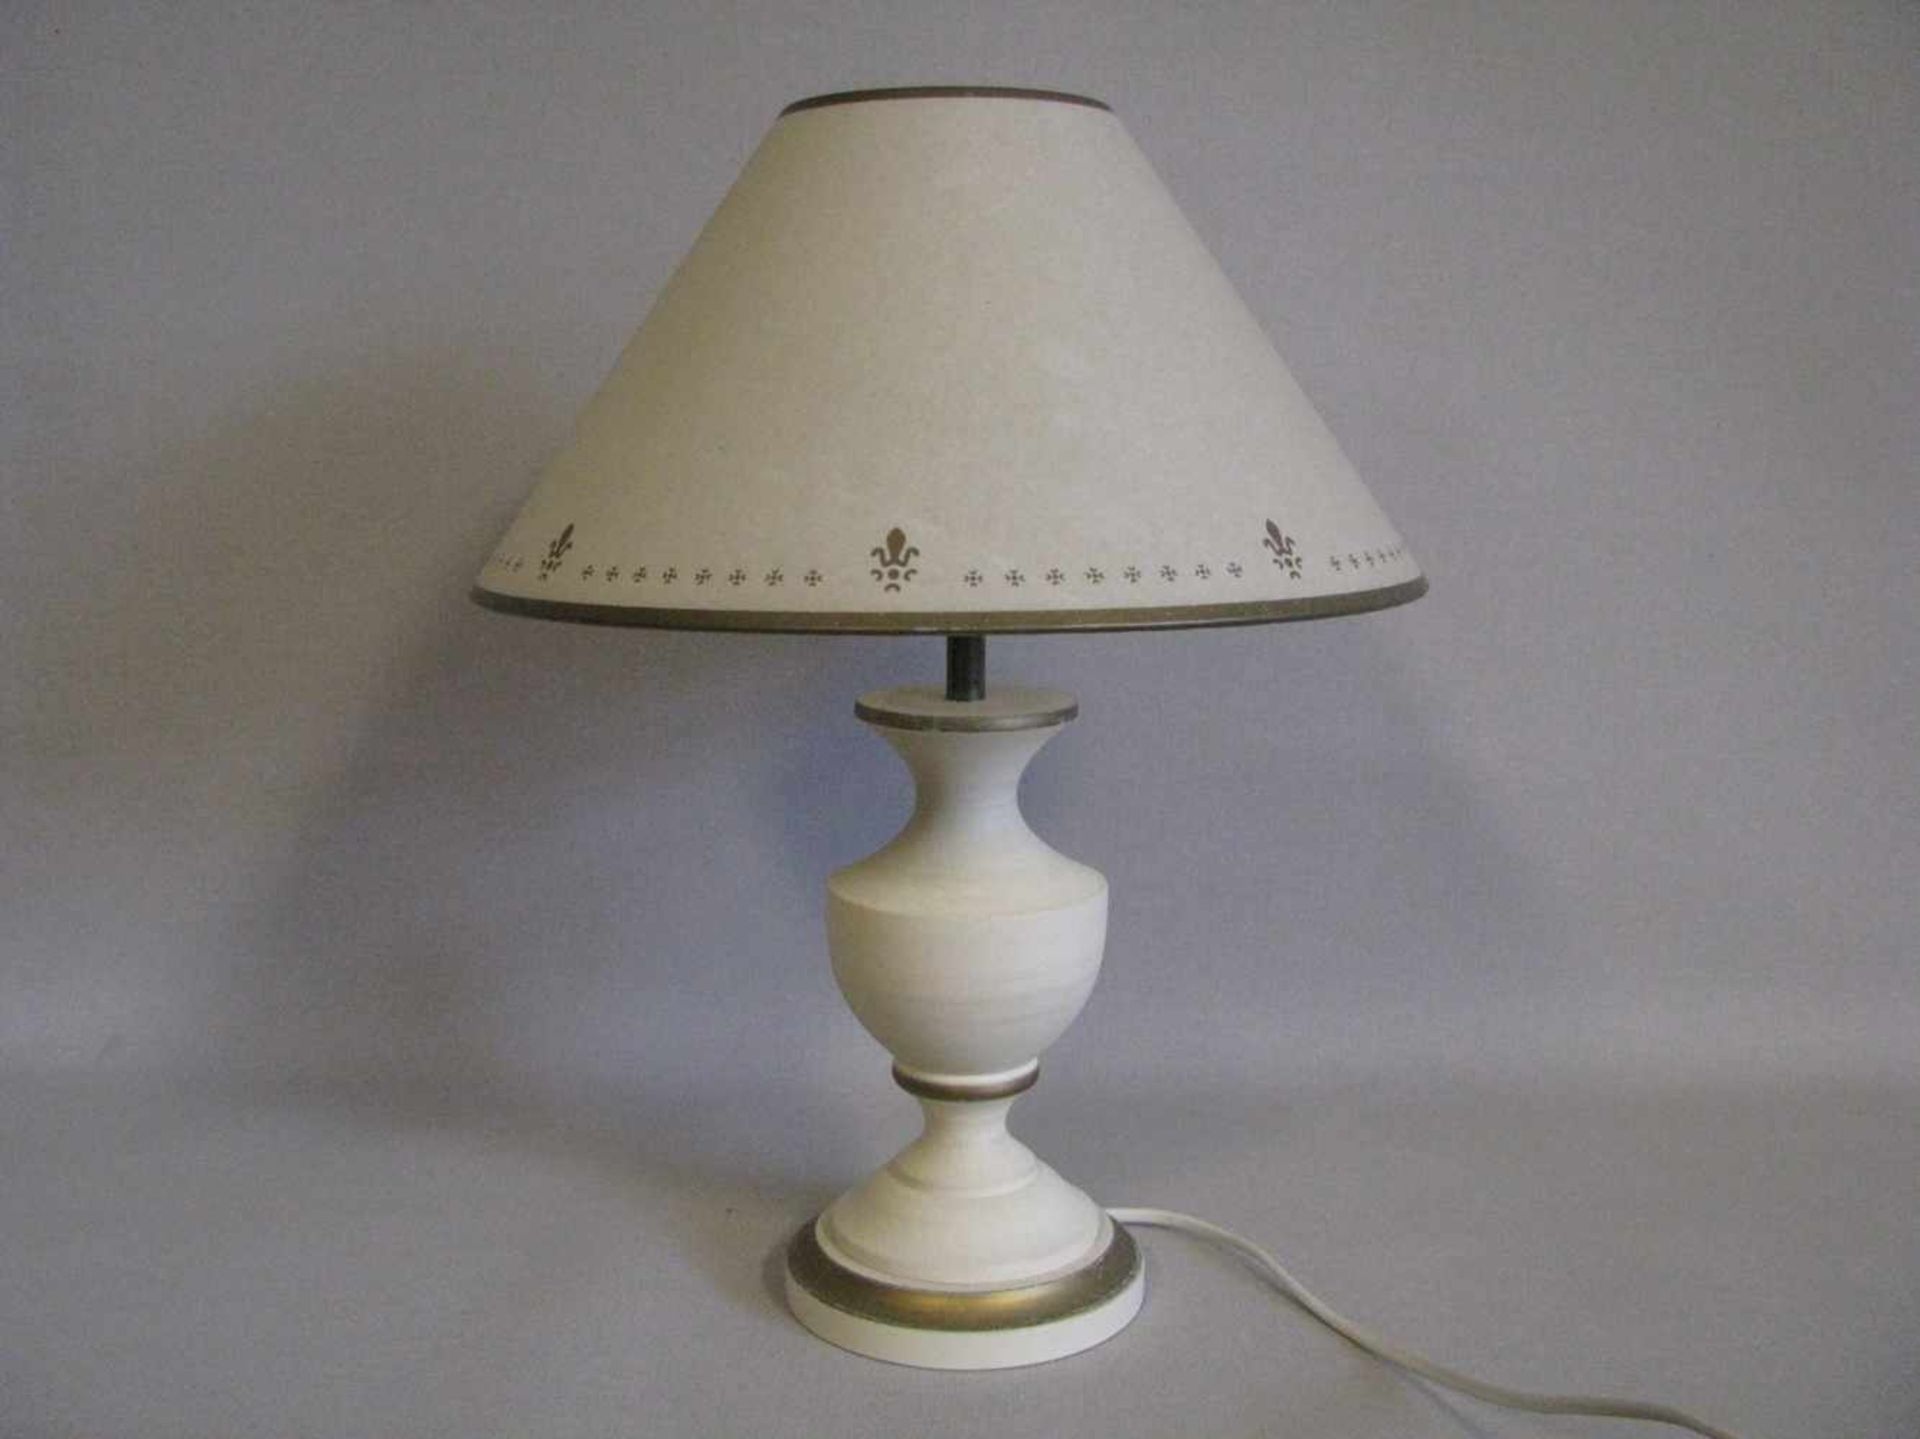 Tischlampe, Laura Ashley, crèmefarben gefasster Holzfuß, einflammig, gem., h 41 cm, d 31 cm.- - -